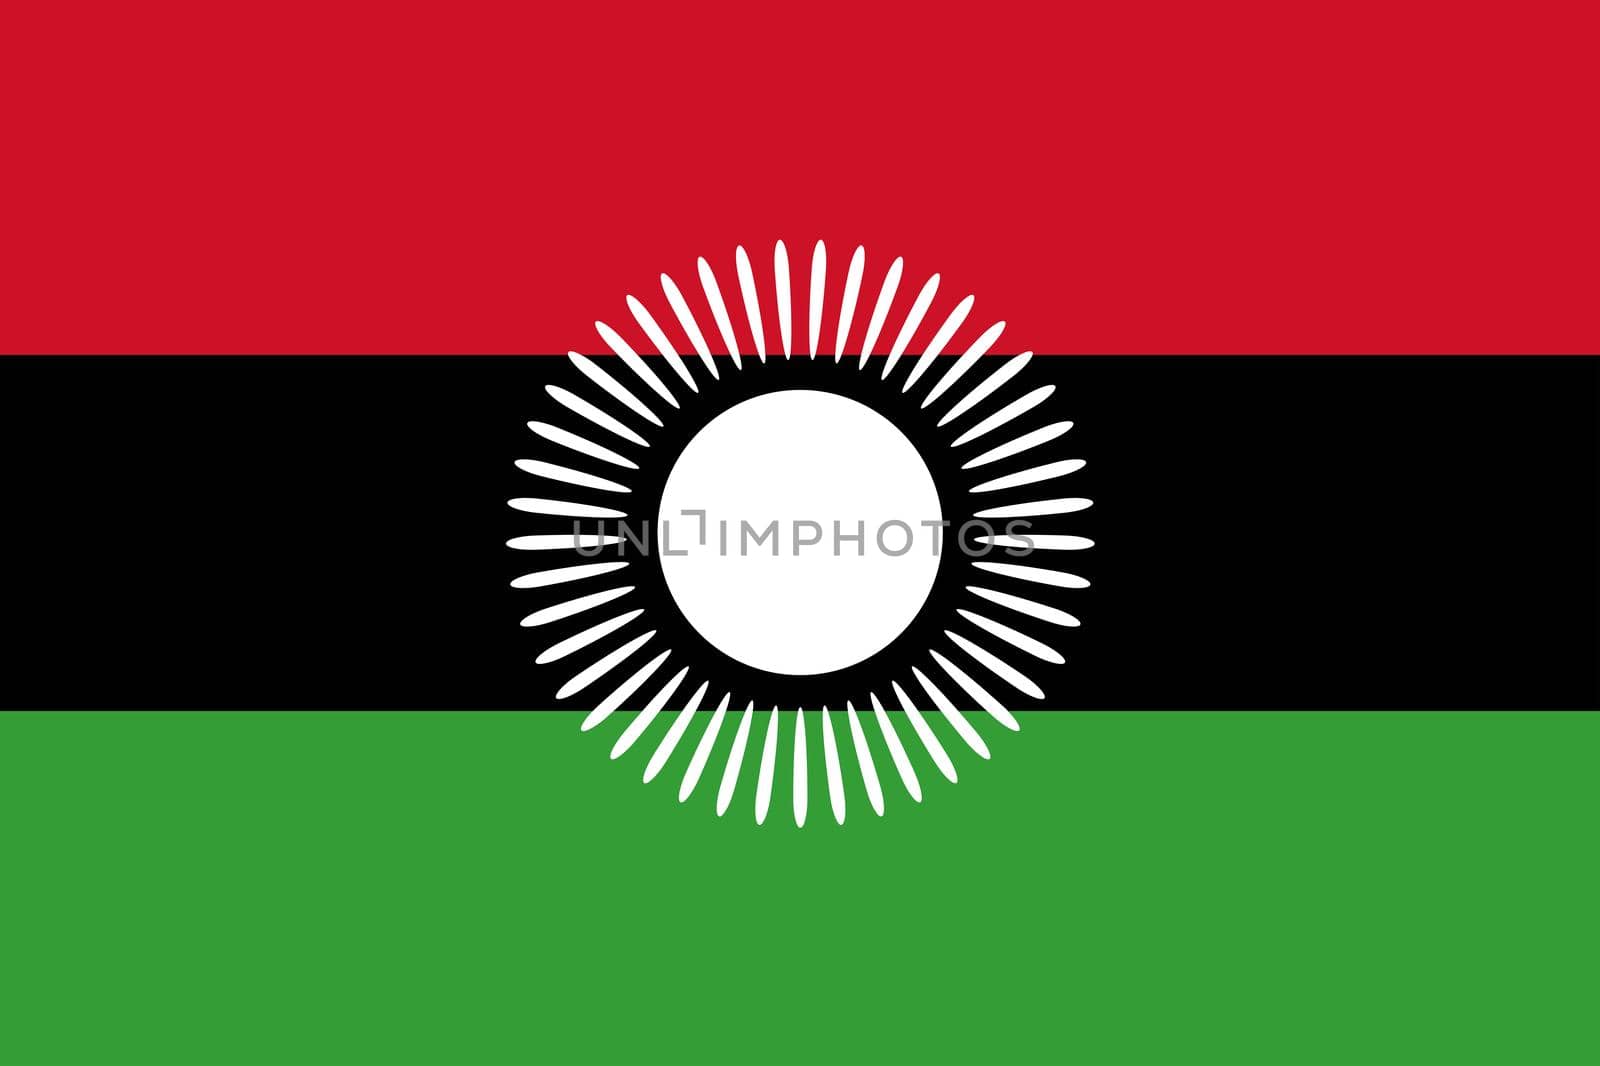 Malawi National Flag by Bigalbaloo